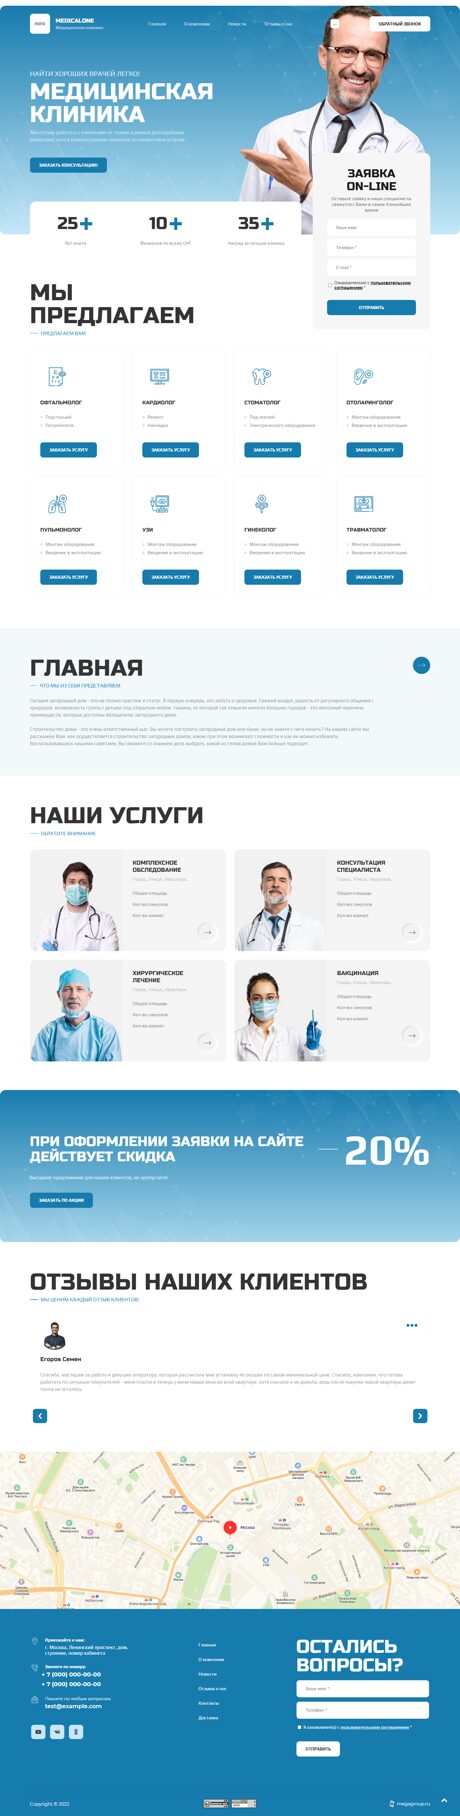 Готовый Сайт-Бизнес № 3924340 - Сайт для Медицинского центра (Превью)